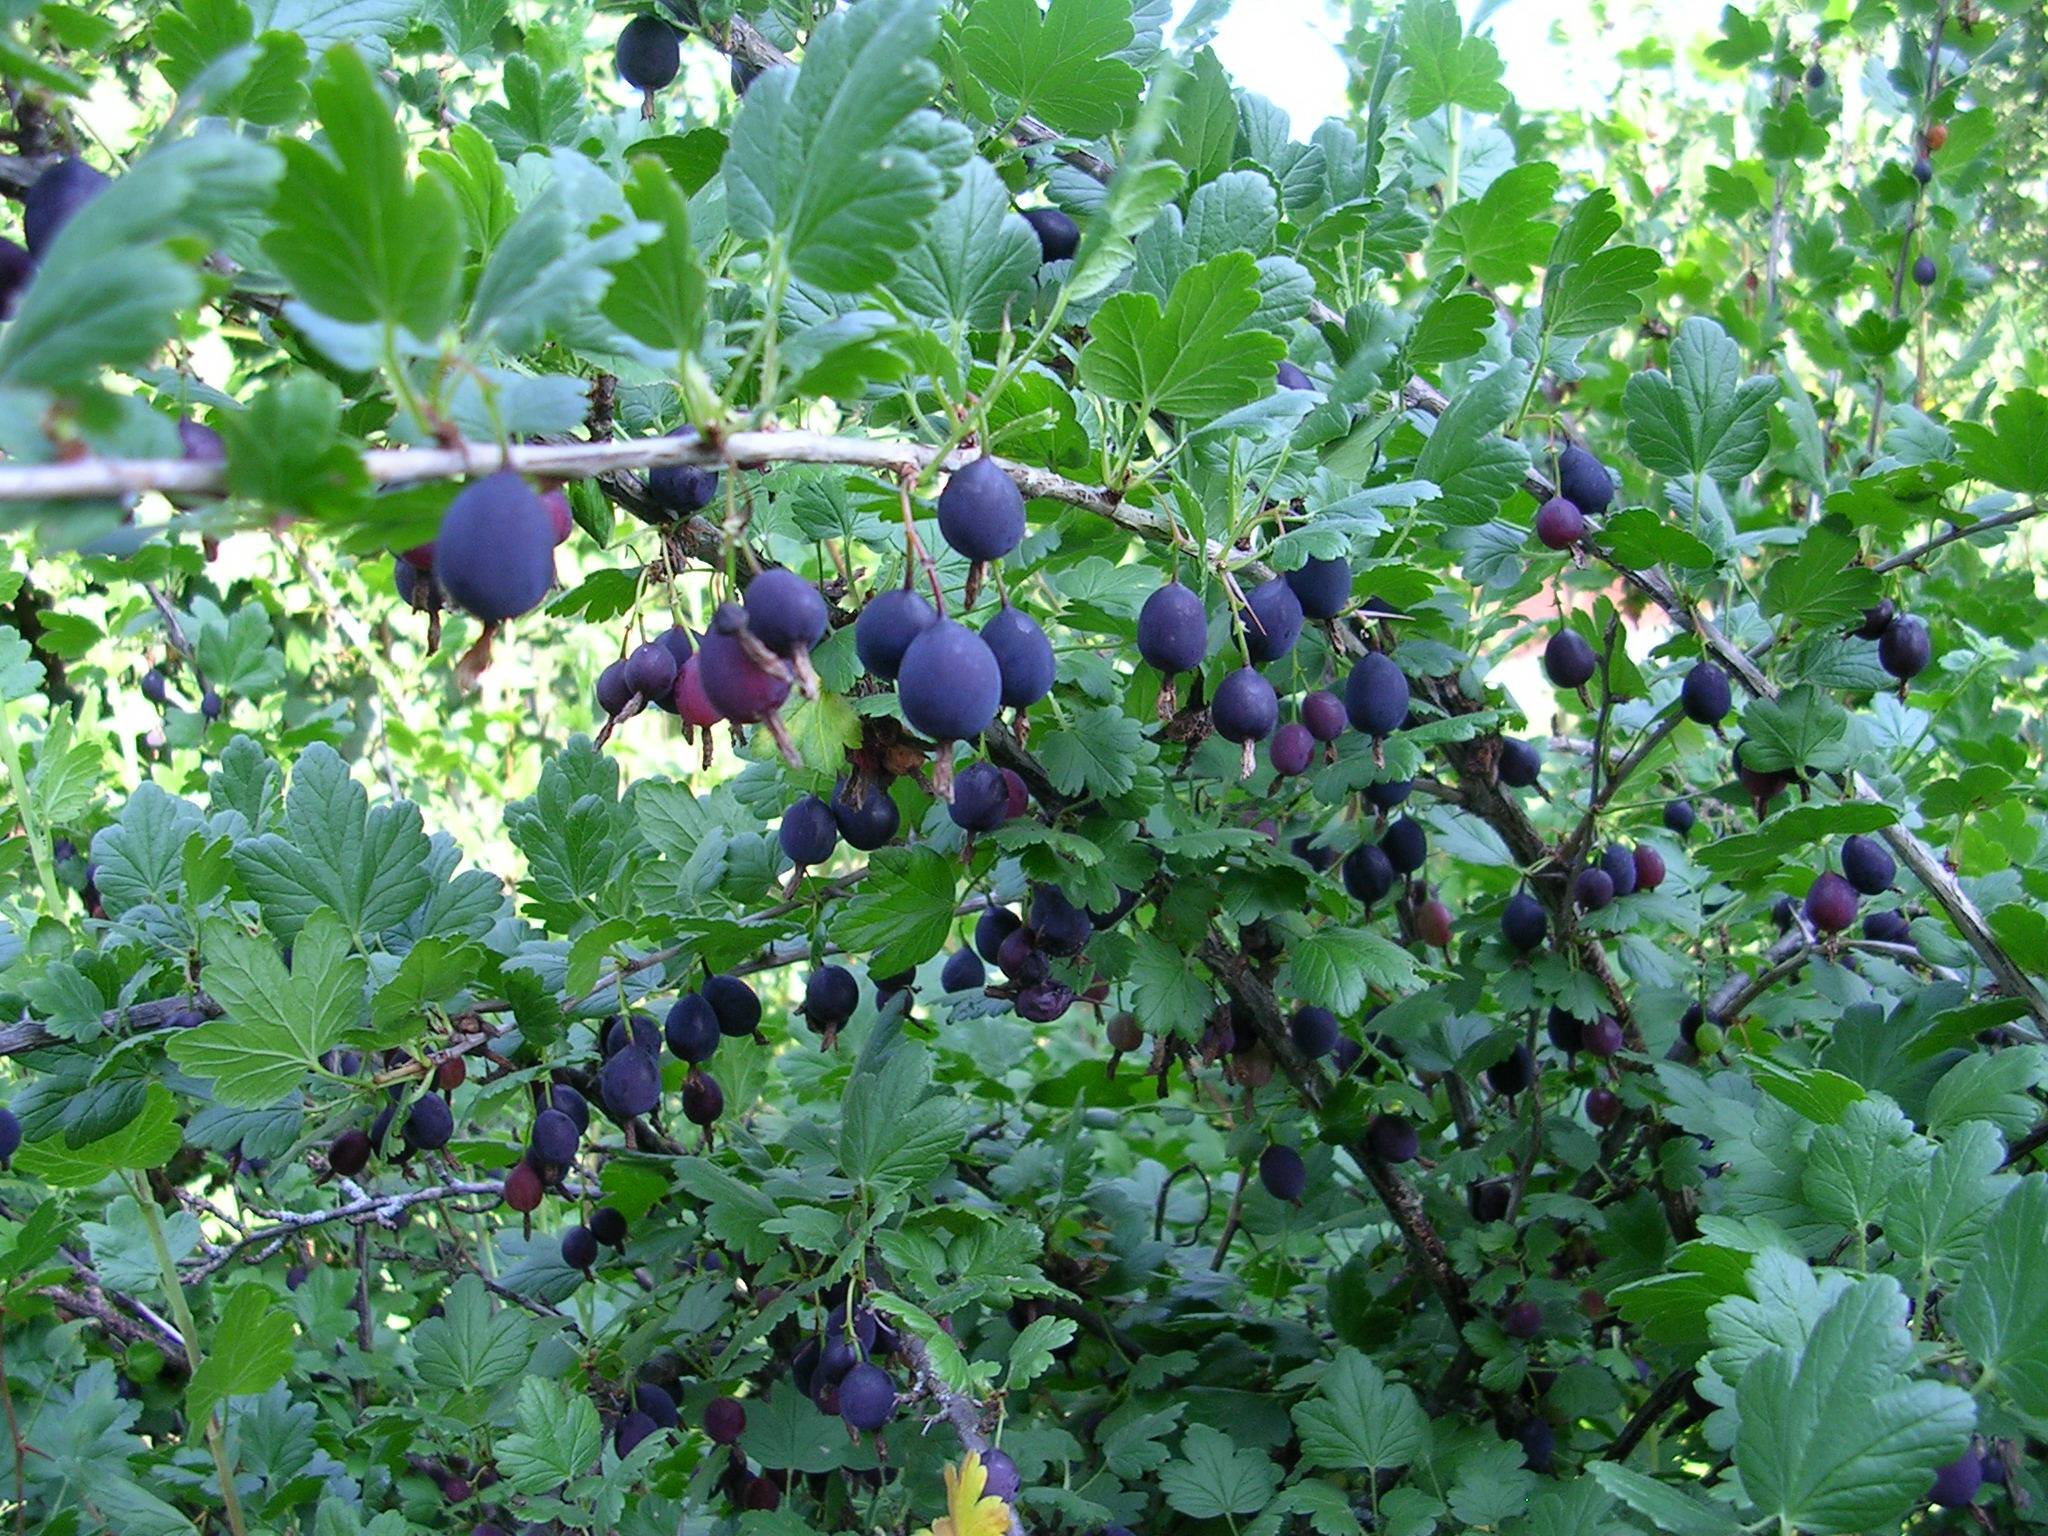 Крыжовник черный негус: обзор темного сорта, отзывы о нем, характеристики кустов и плодов, размер ягод